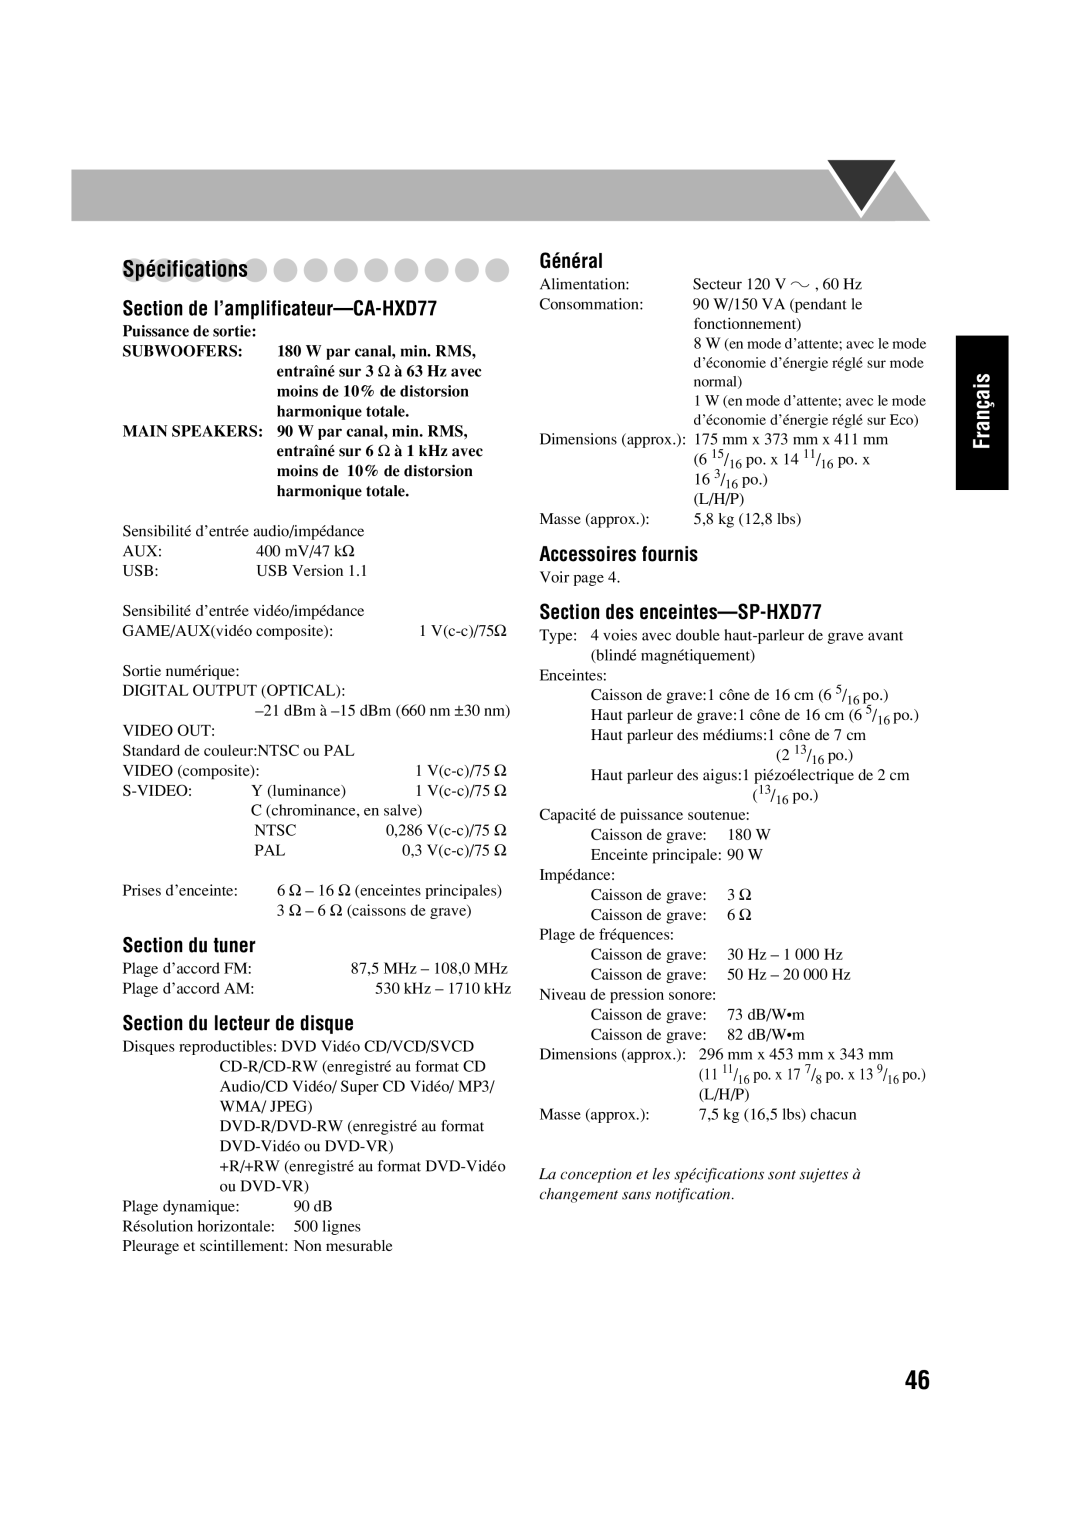 JVC manual Spécifications, Section de l’amplificateur—CA-HXD77, Section du tuner, Section du lecteur de disque, Français 